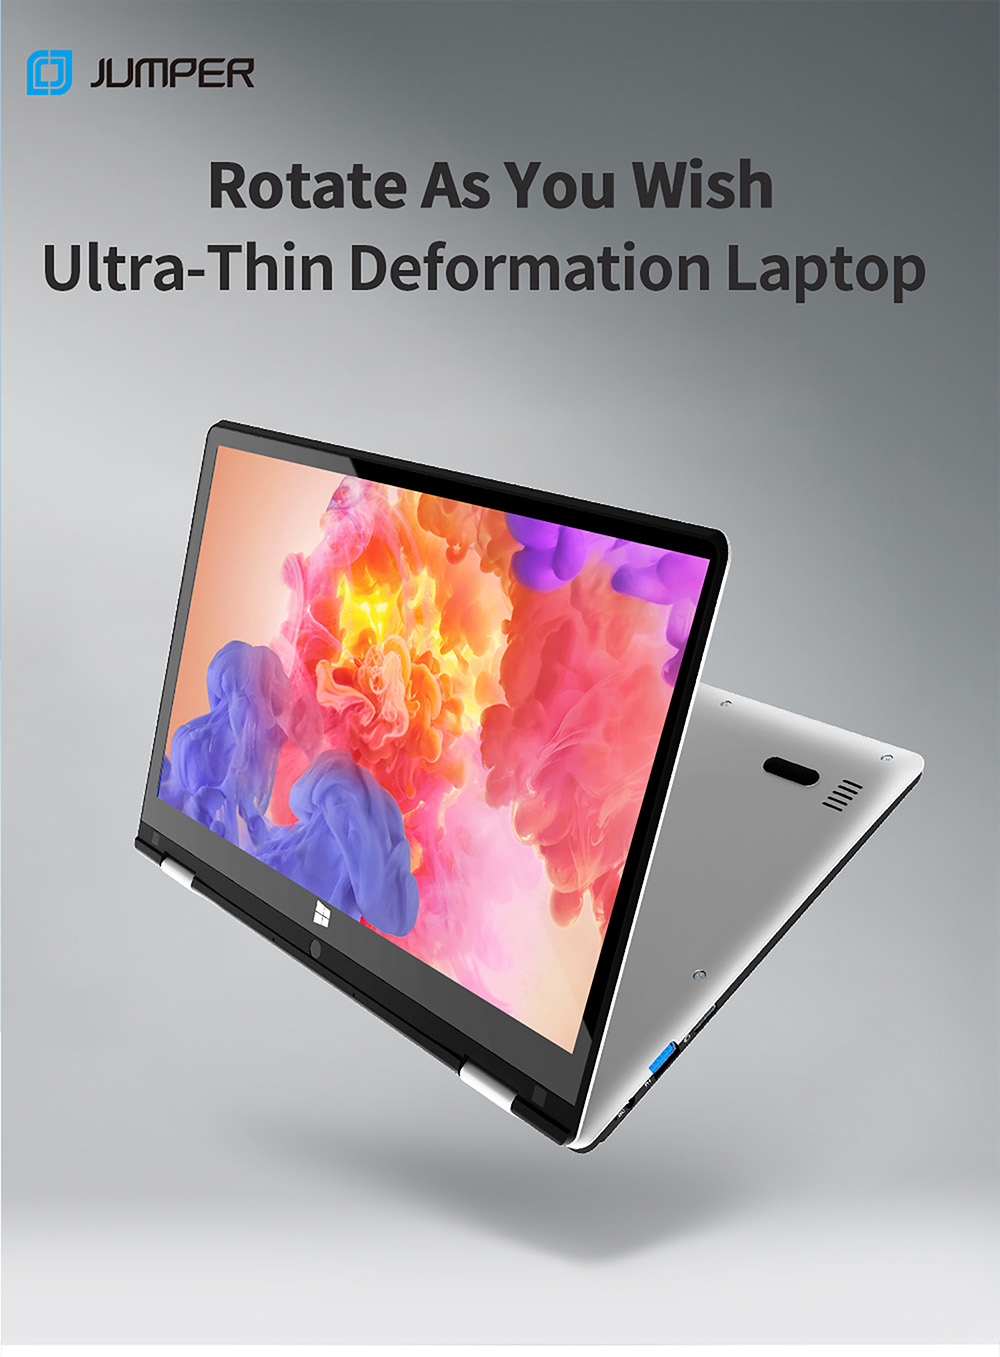 Jumper EZbook X1S 2 v 1 Tablet Intel Gemini Lake N4000 4GB LPDDR4 128GB eMMC 1366x768 Displej Windows 10 - Sivý